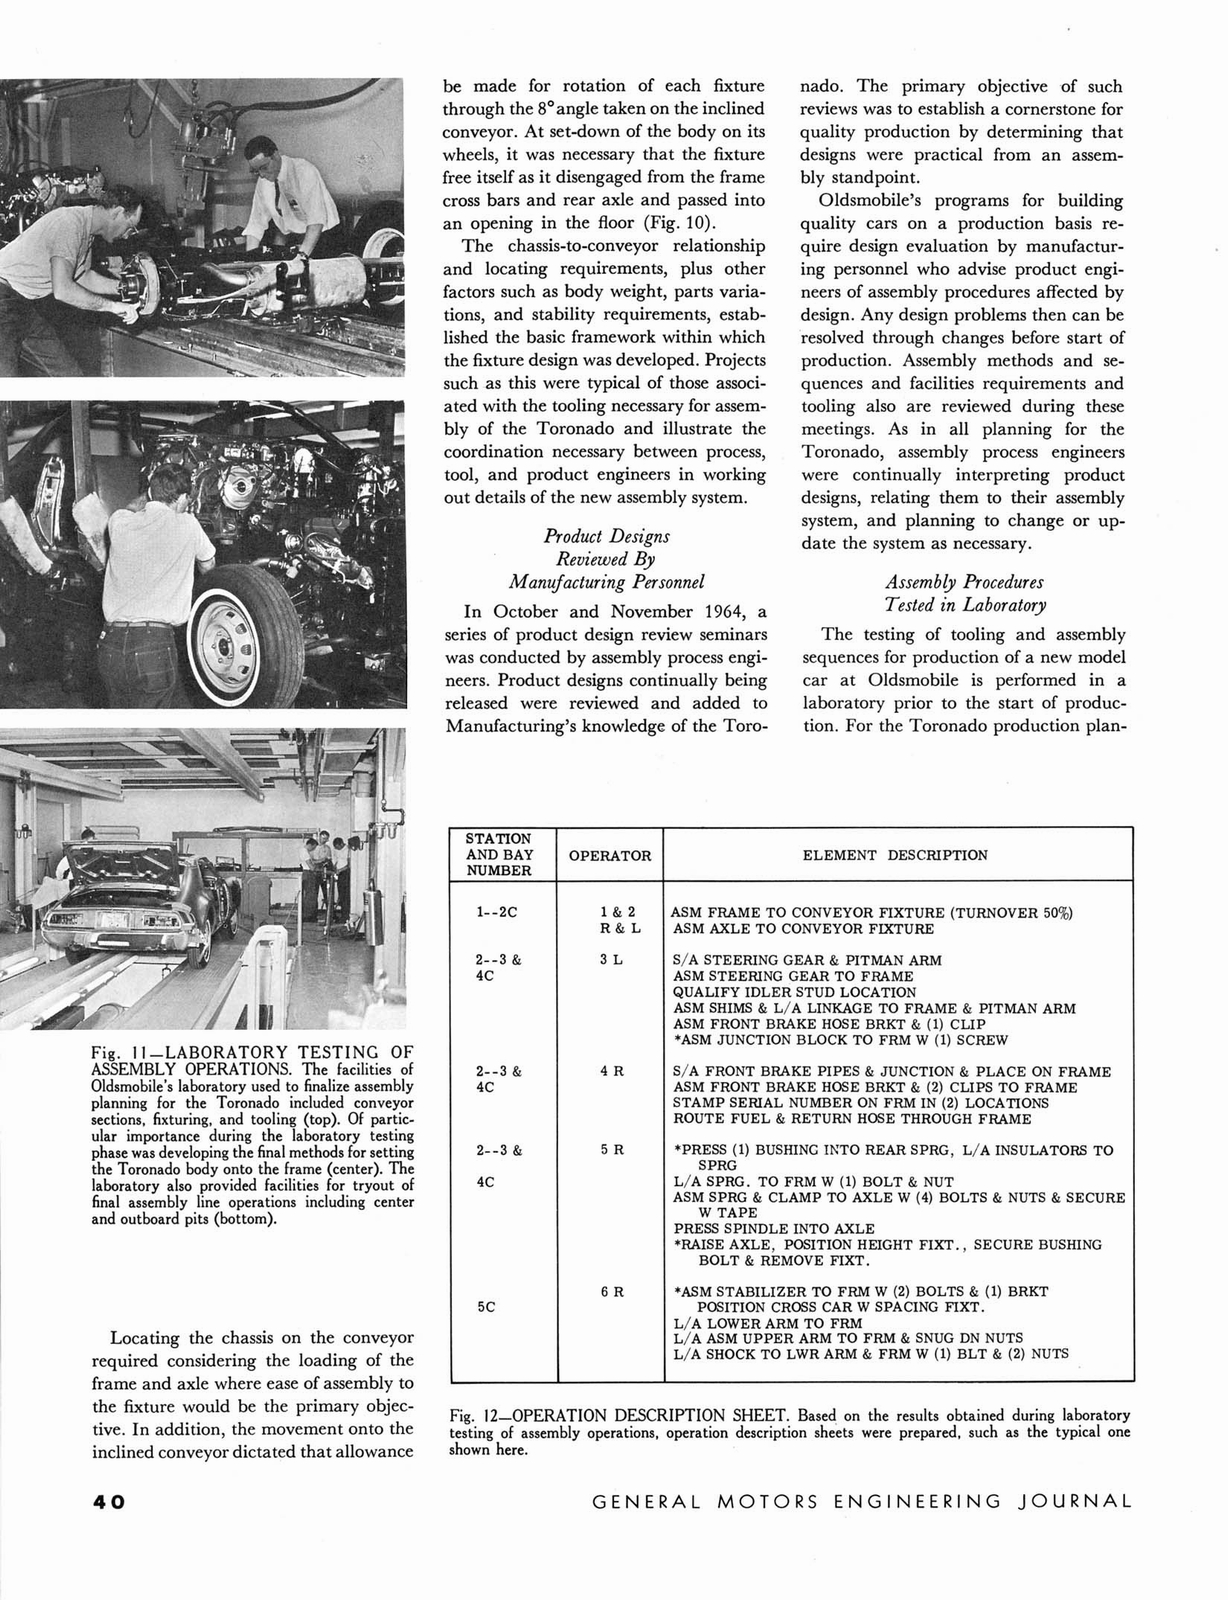 n_1966 GM Eng Journal Qtr2-40.jpg